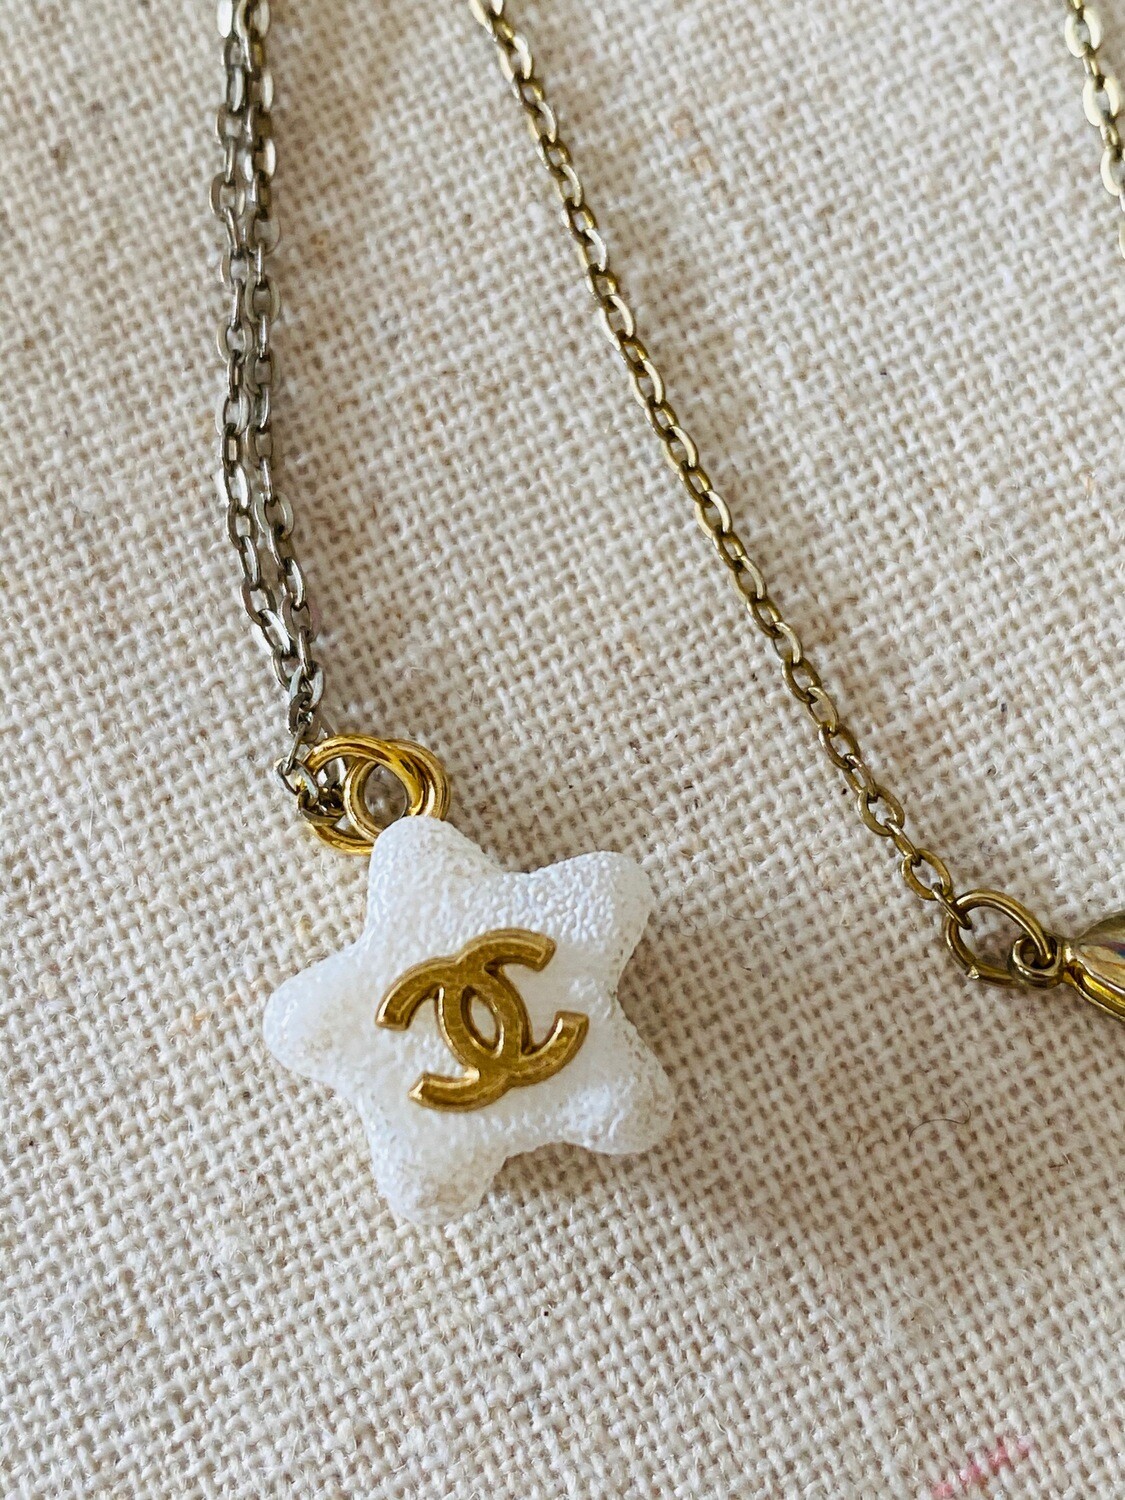 chanel cc pendant necklace gold